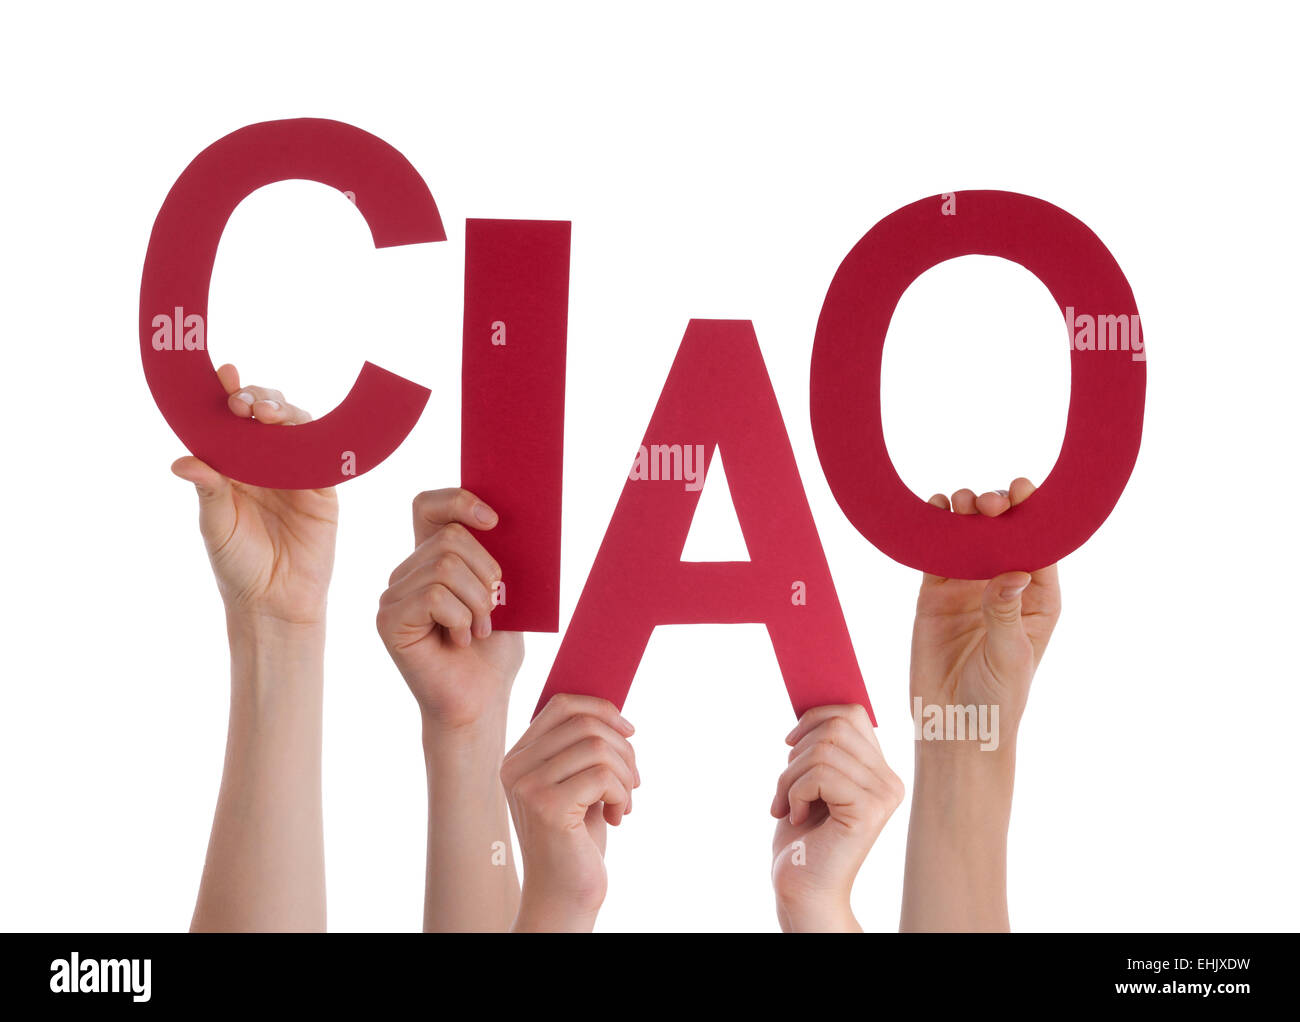 Viele kaukasische Menschen und Händen mit roten Buchstaben oder Zeichen Gebäude das isolierte italienische Wort Ciao welche Mittel-Goodbye-St Stockfoto